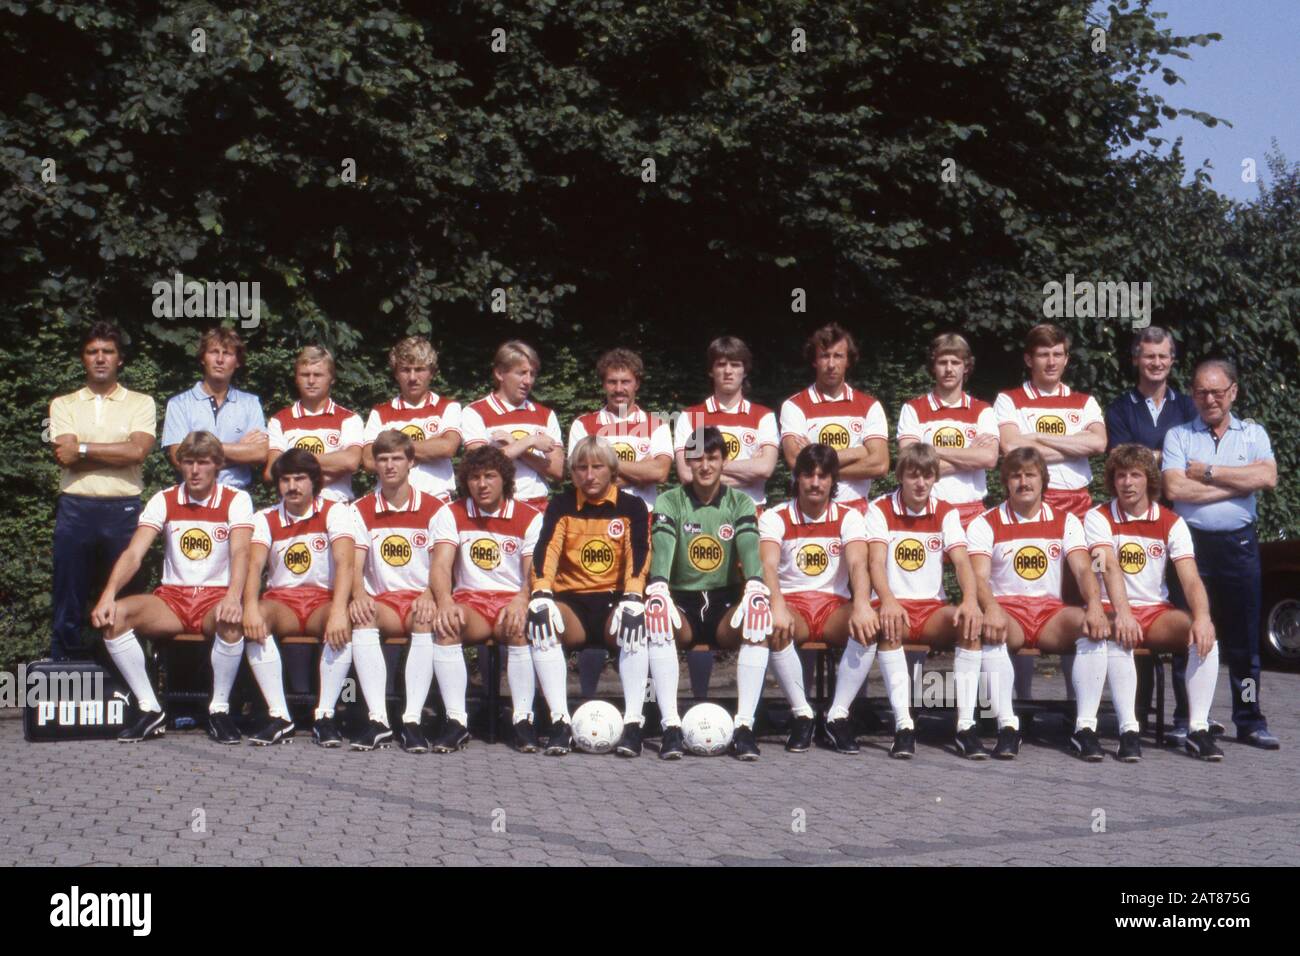 Il team Fortuna Dusseldorf nella stagione 1982/1983: Prima fila da sinistra: Rudi BOMMER, Ralf DUSEND, Holger FACH, Josef WEILL, goalwart Wolfgang KLEFF, goalwart Oliver BUECHER, Guenter THIELE, Manfred BOCKENFEELD, Guenter Kuczinski, Ruediger WENZEL. Fila posteriore da sinistra: Pullman Joerg BERGER, masseur RESTLE, RUTKA, Stefan DUBER, Gerd ZEWE, Peter LOEHR, Petur ORMALEV, Amand THEIS, KANDERA, EVALDSSON, coach BROSIUS, supervisore HEIDELBERG. Calcio 1. Bundesliga, presentazione del team e presentazione del team, Fortuna Dusseldorf, 15.08.1982, | utilizzo in tutto il mondo Foto Stock